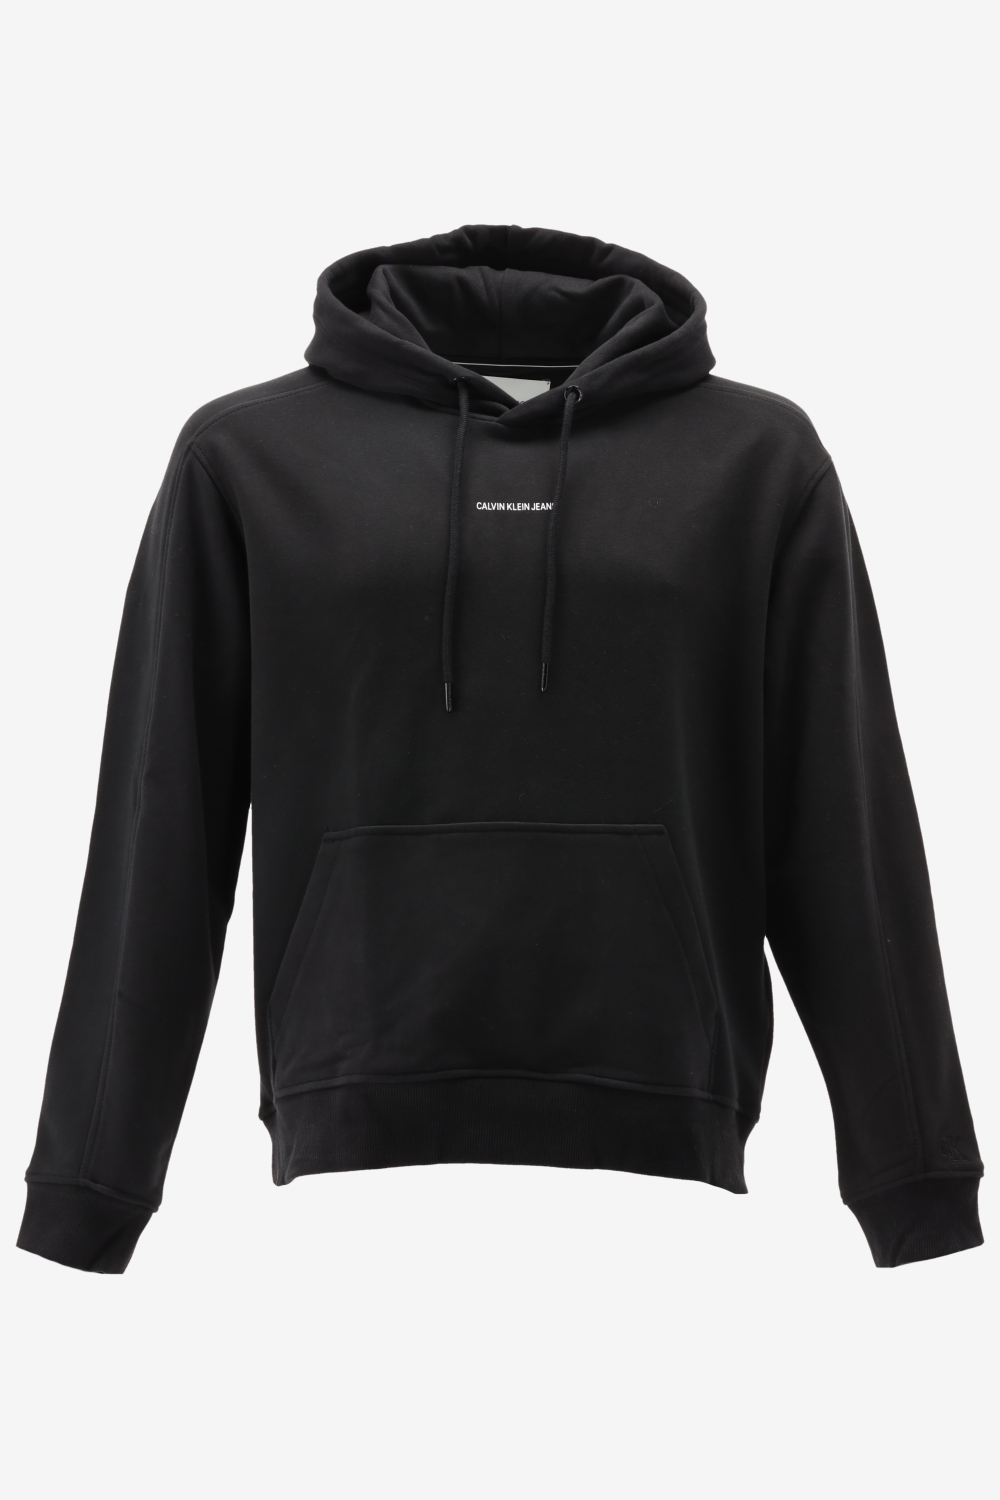 Calvin klein hoodie micro branding maat L